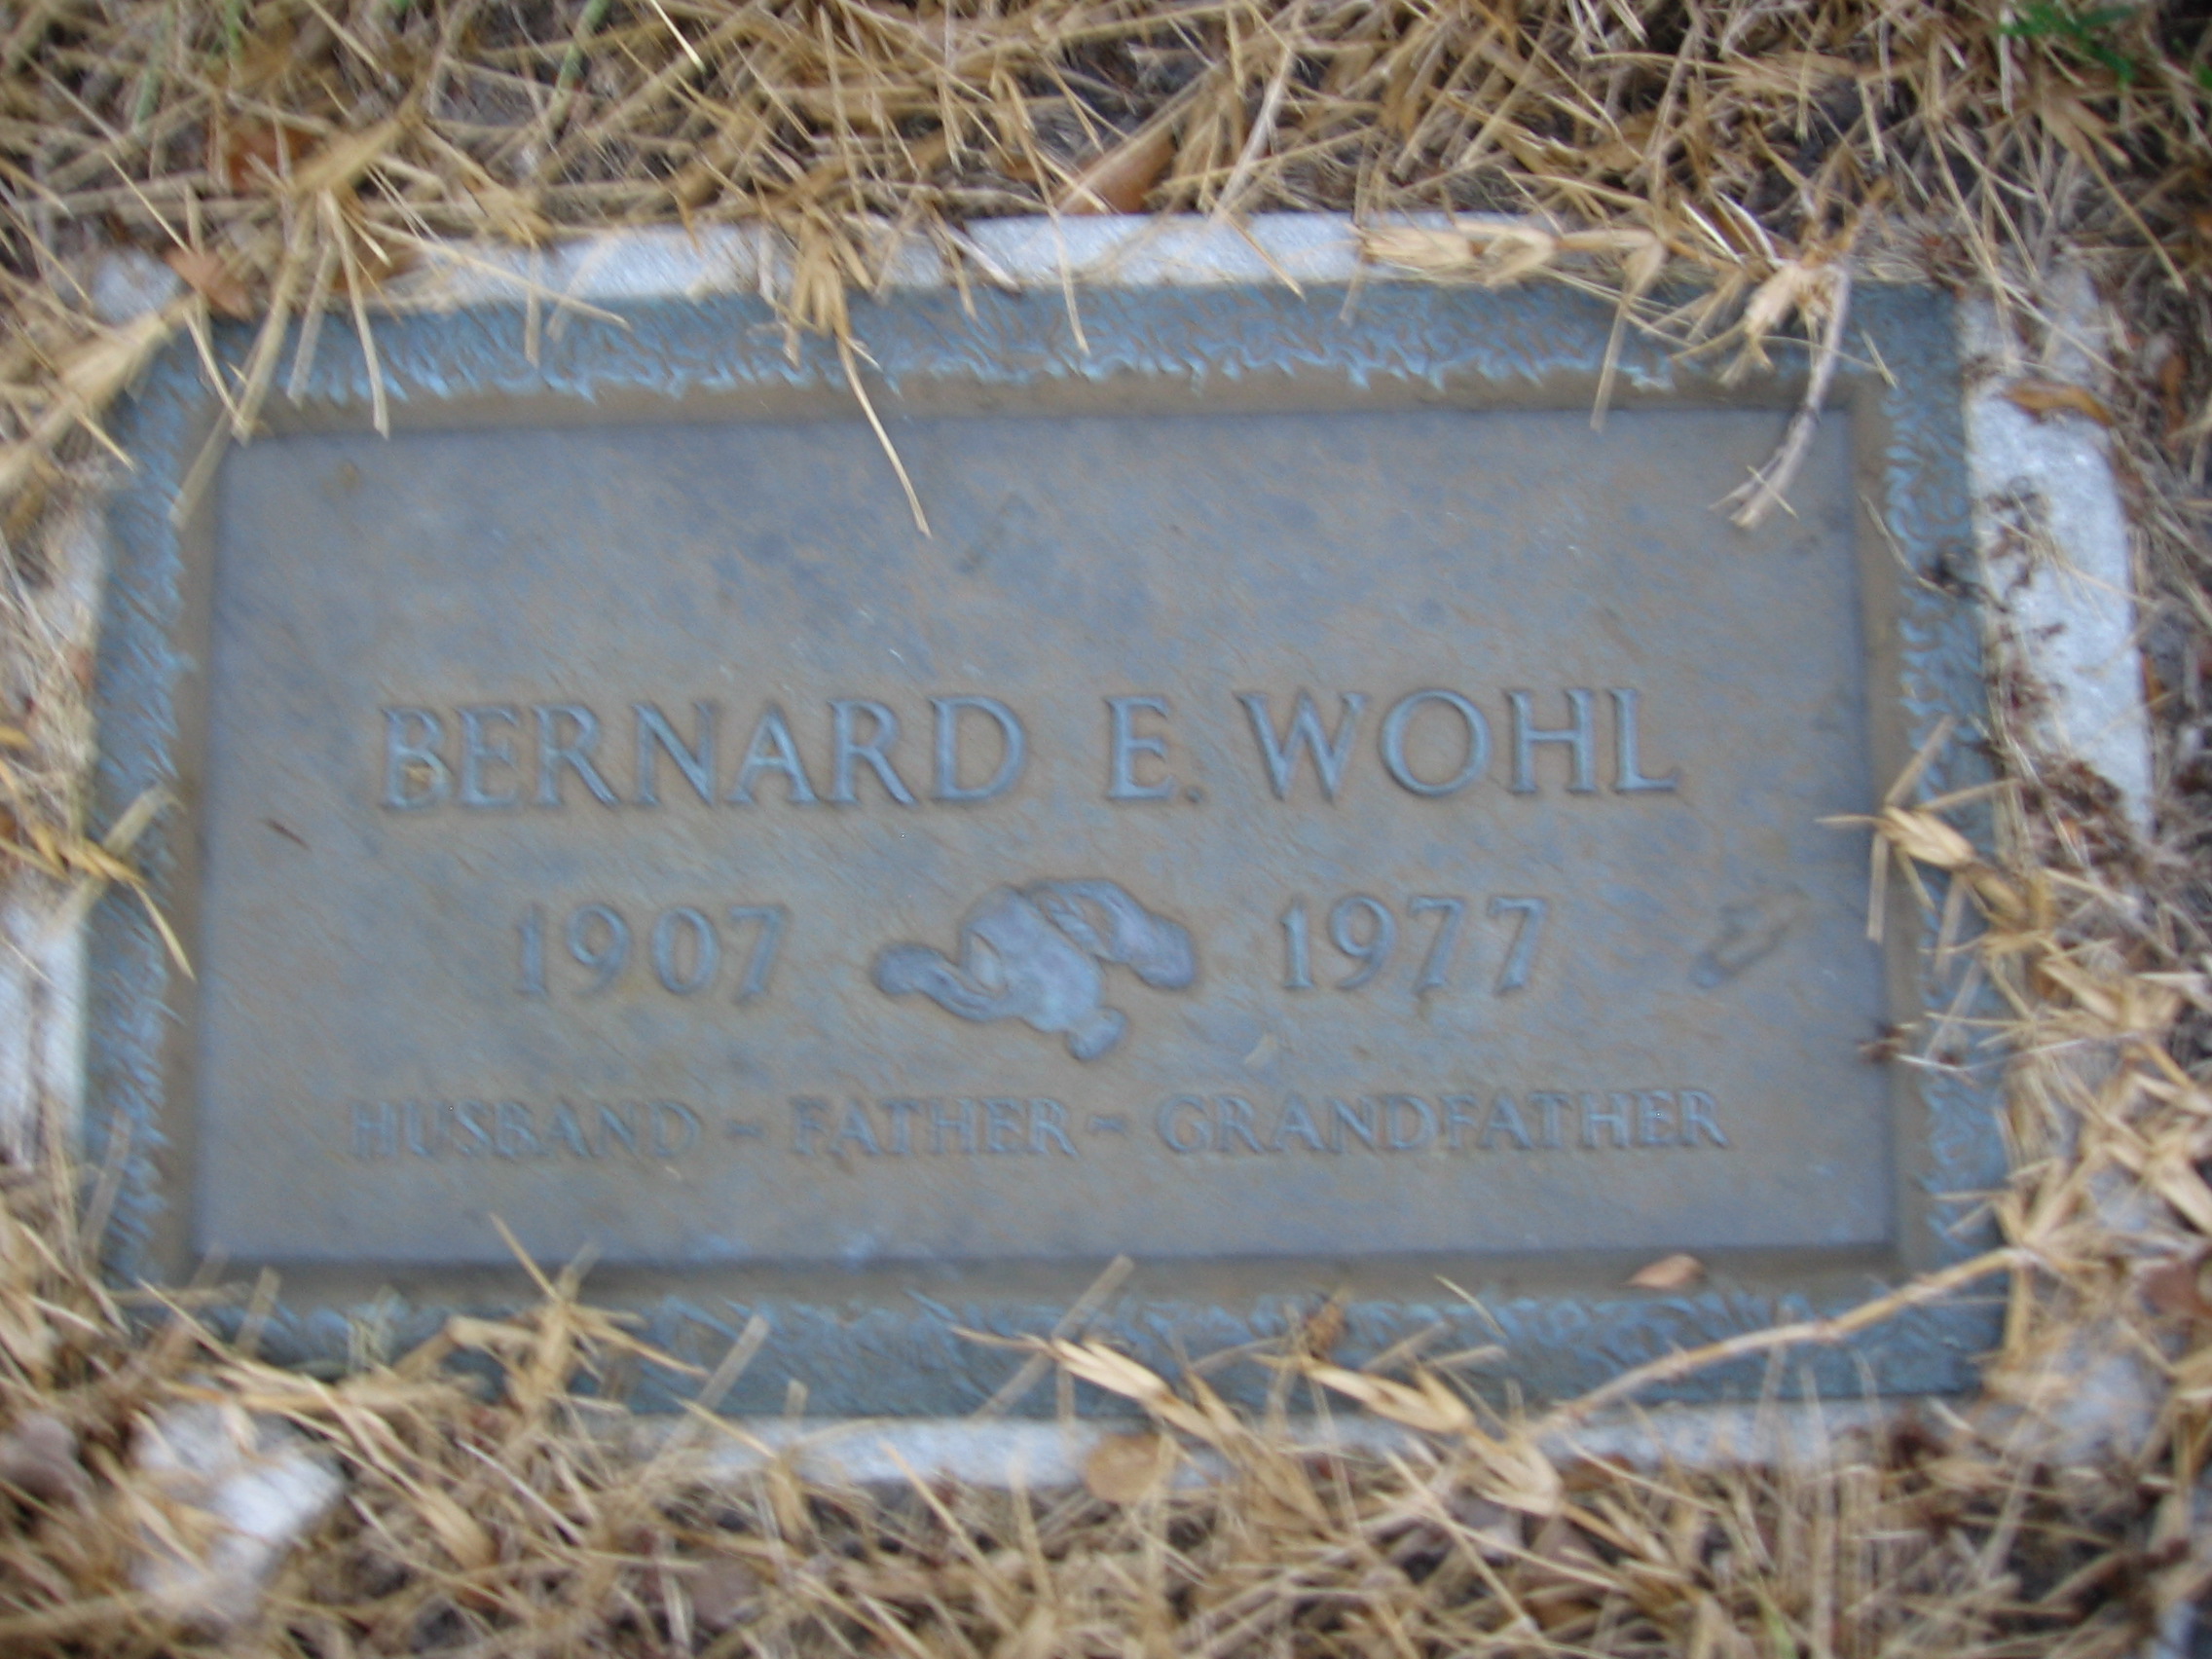 Bernard E Wohl